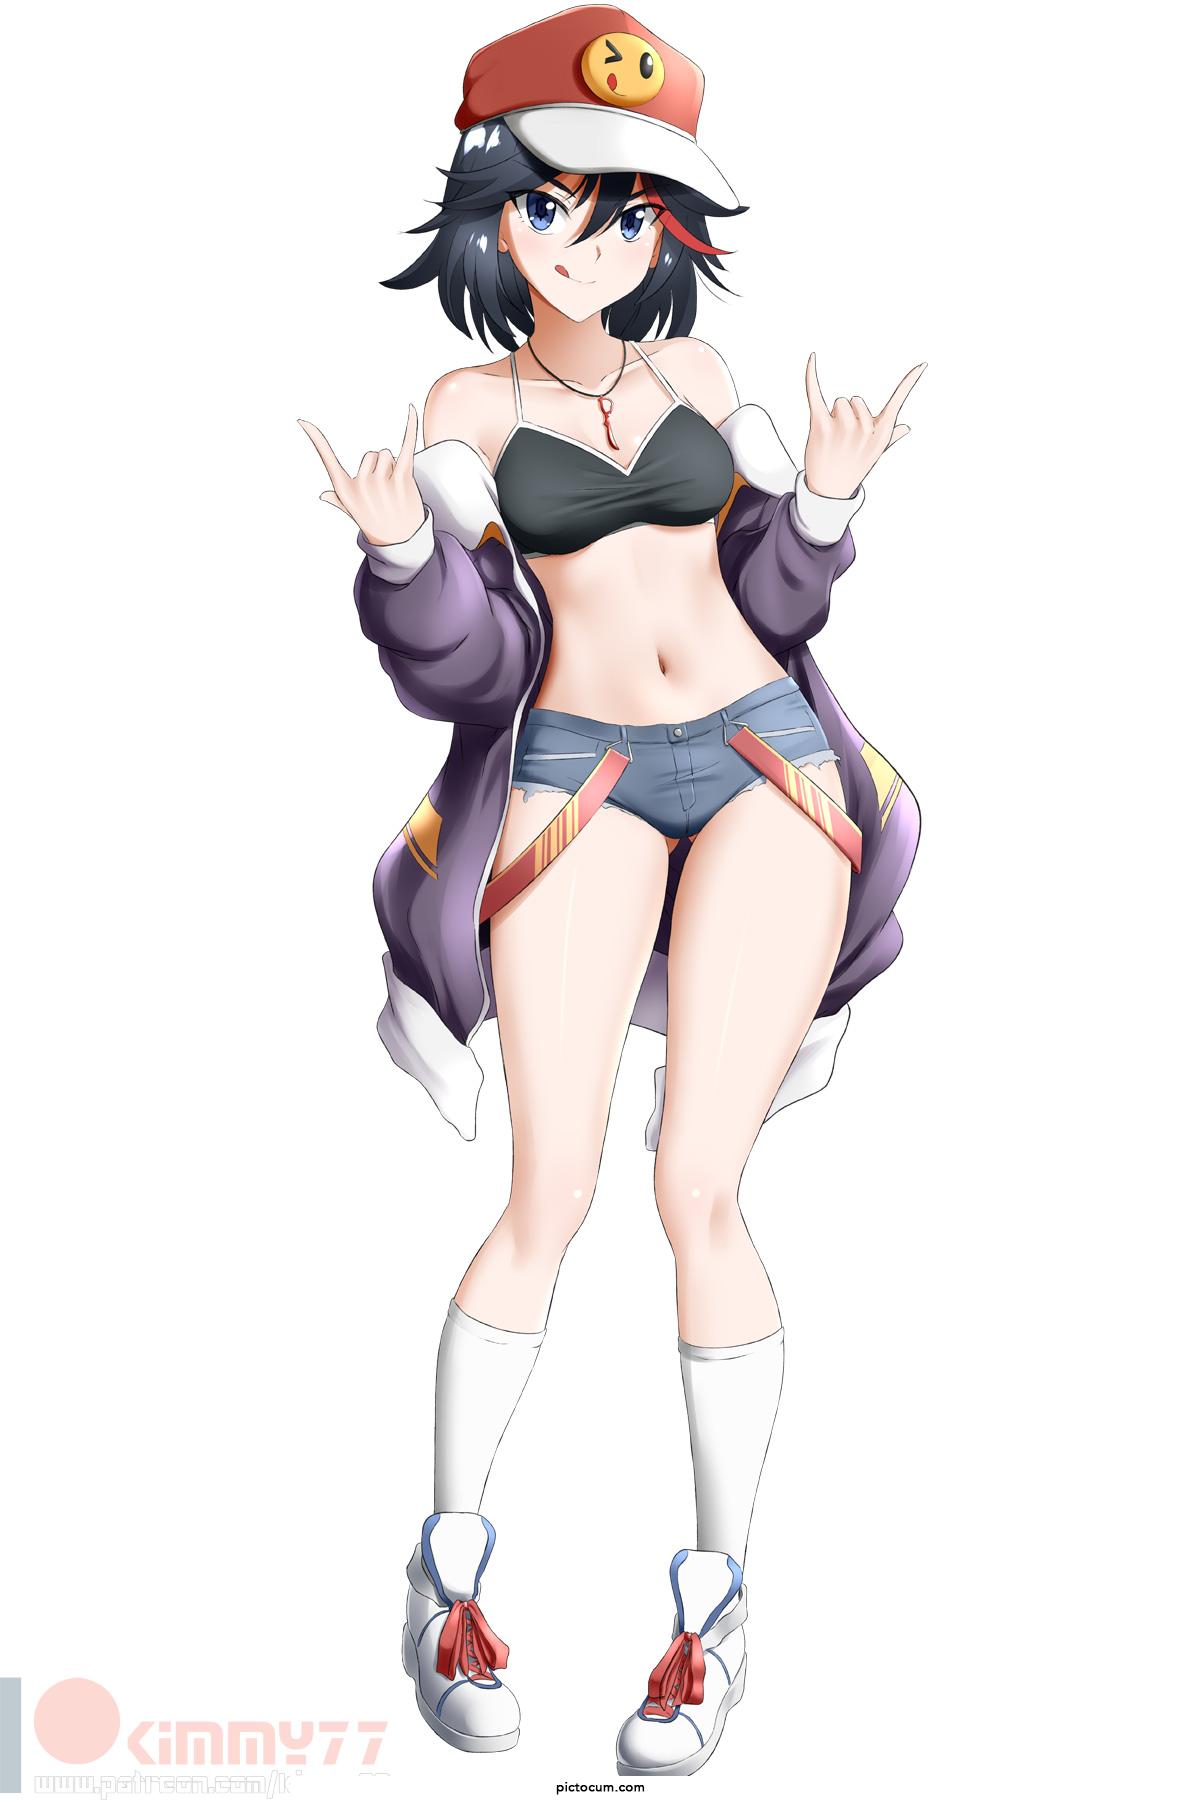 Ryuuko in short shorts